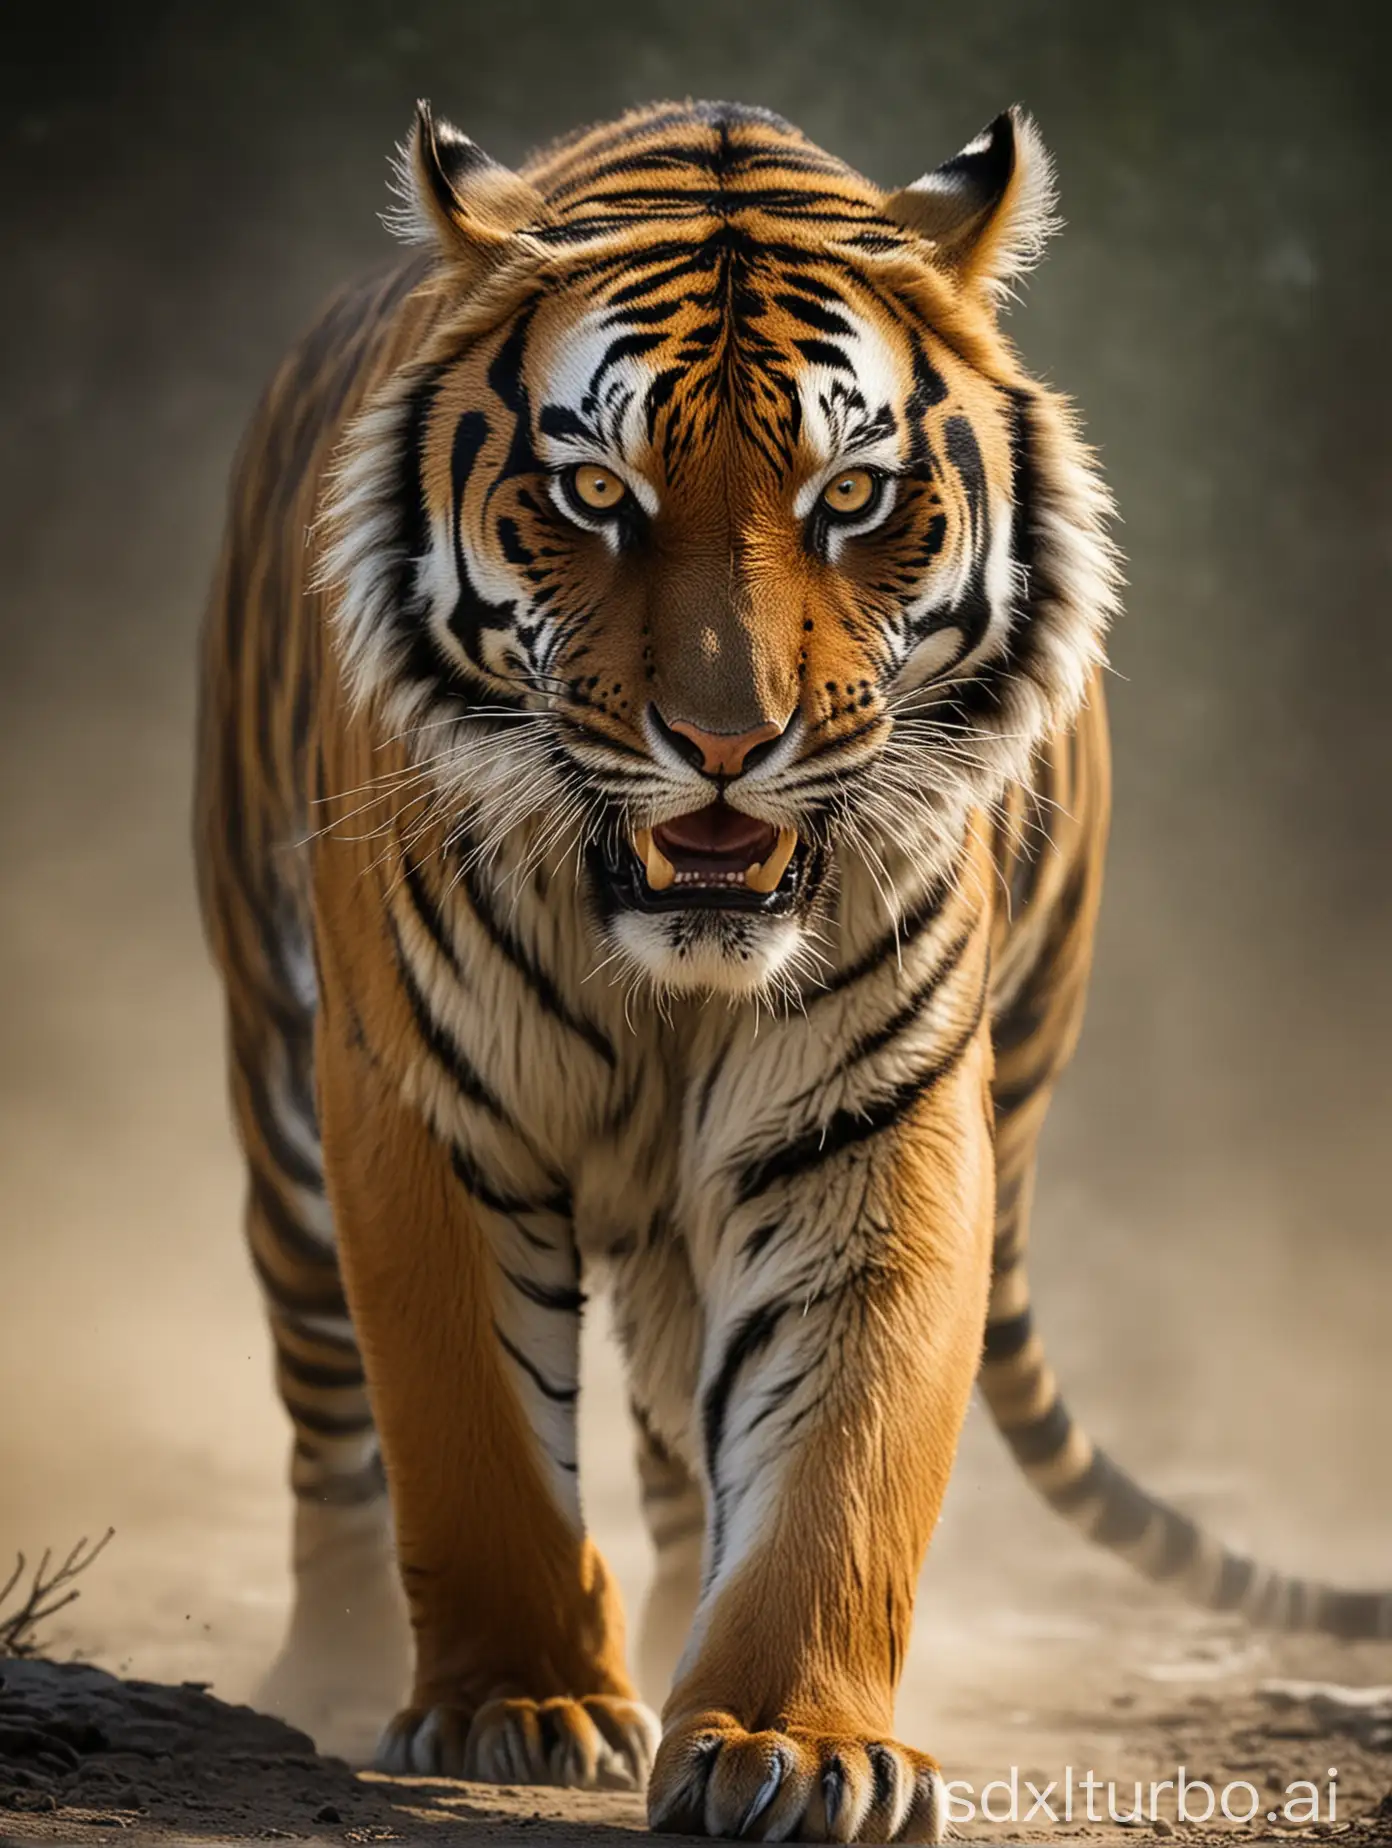 a fierce tiger